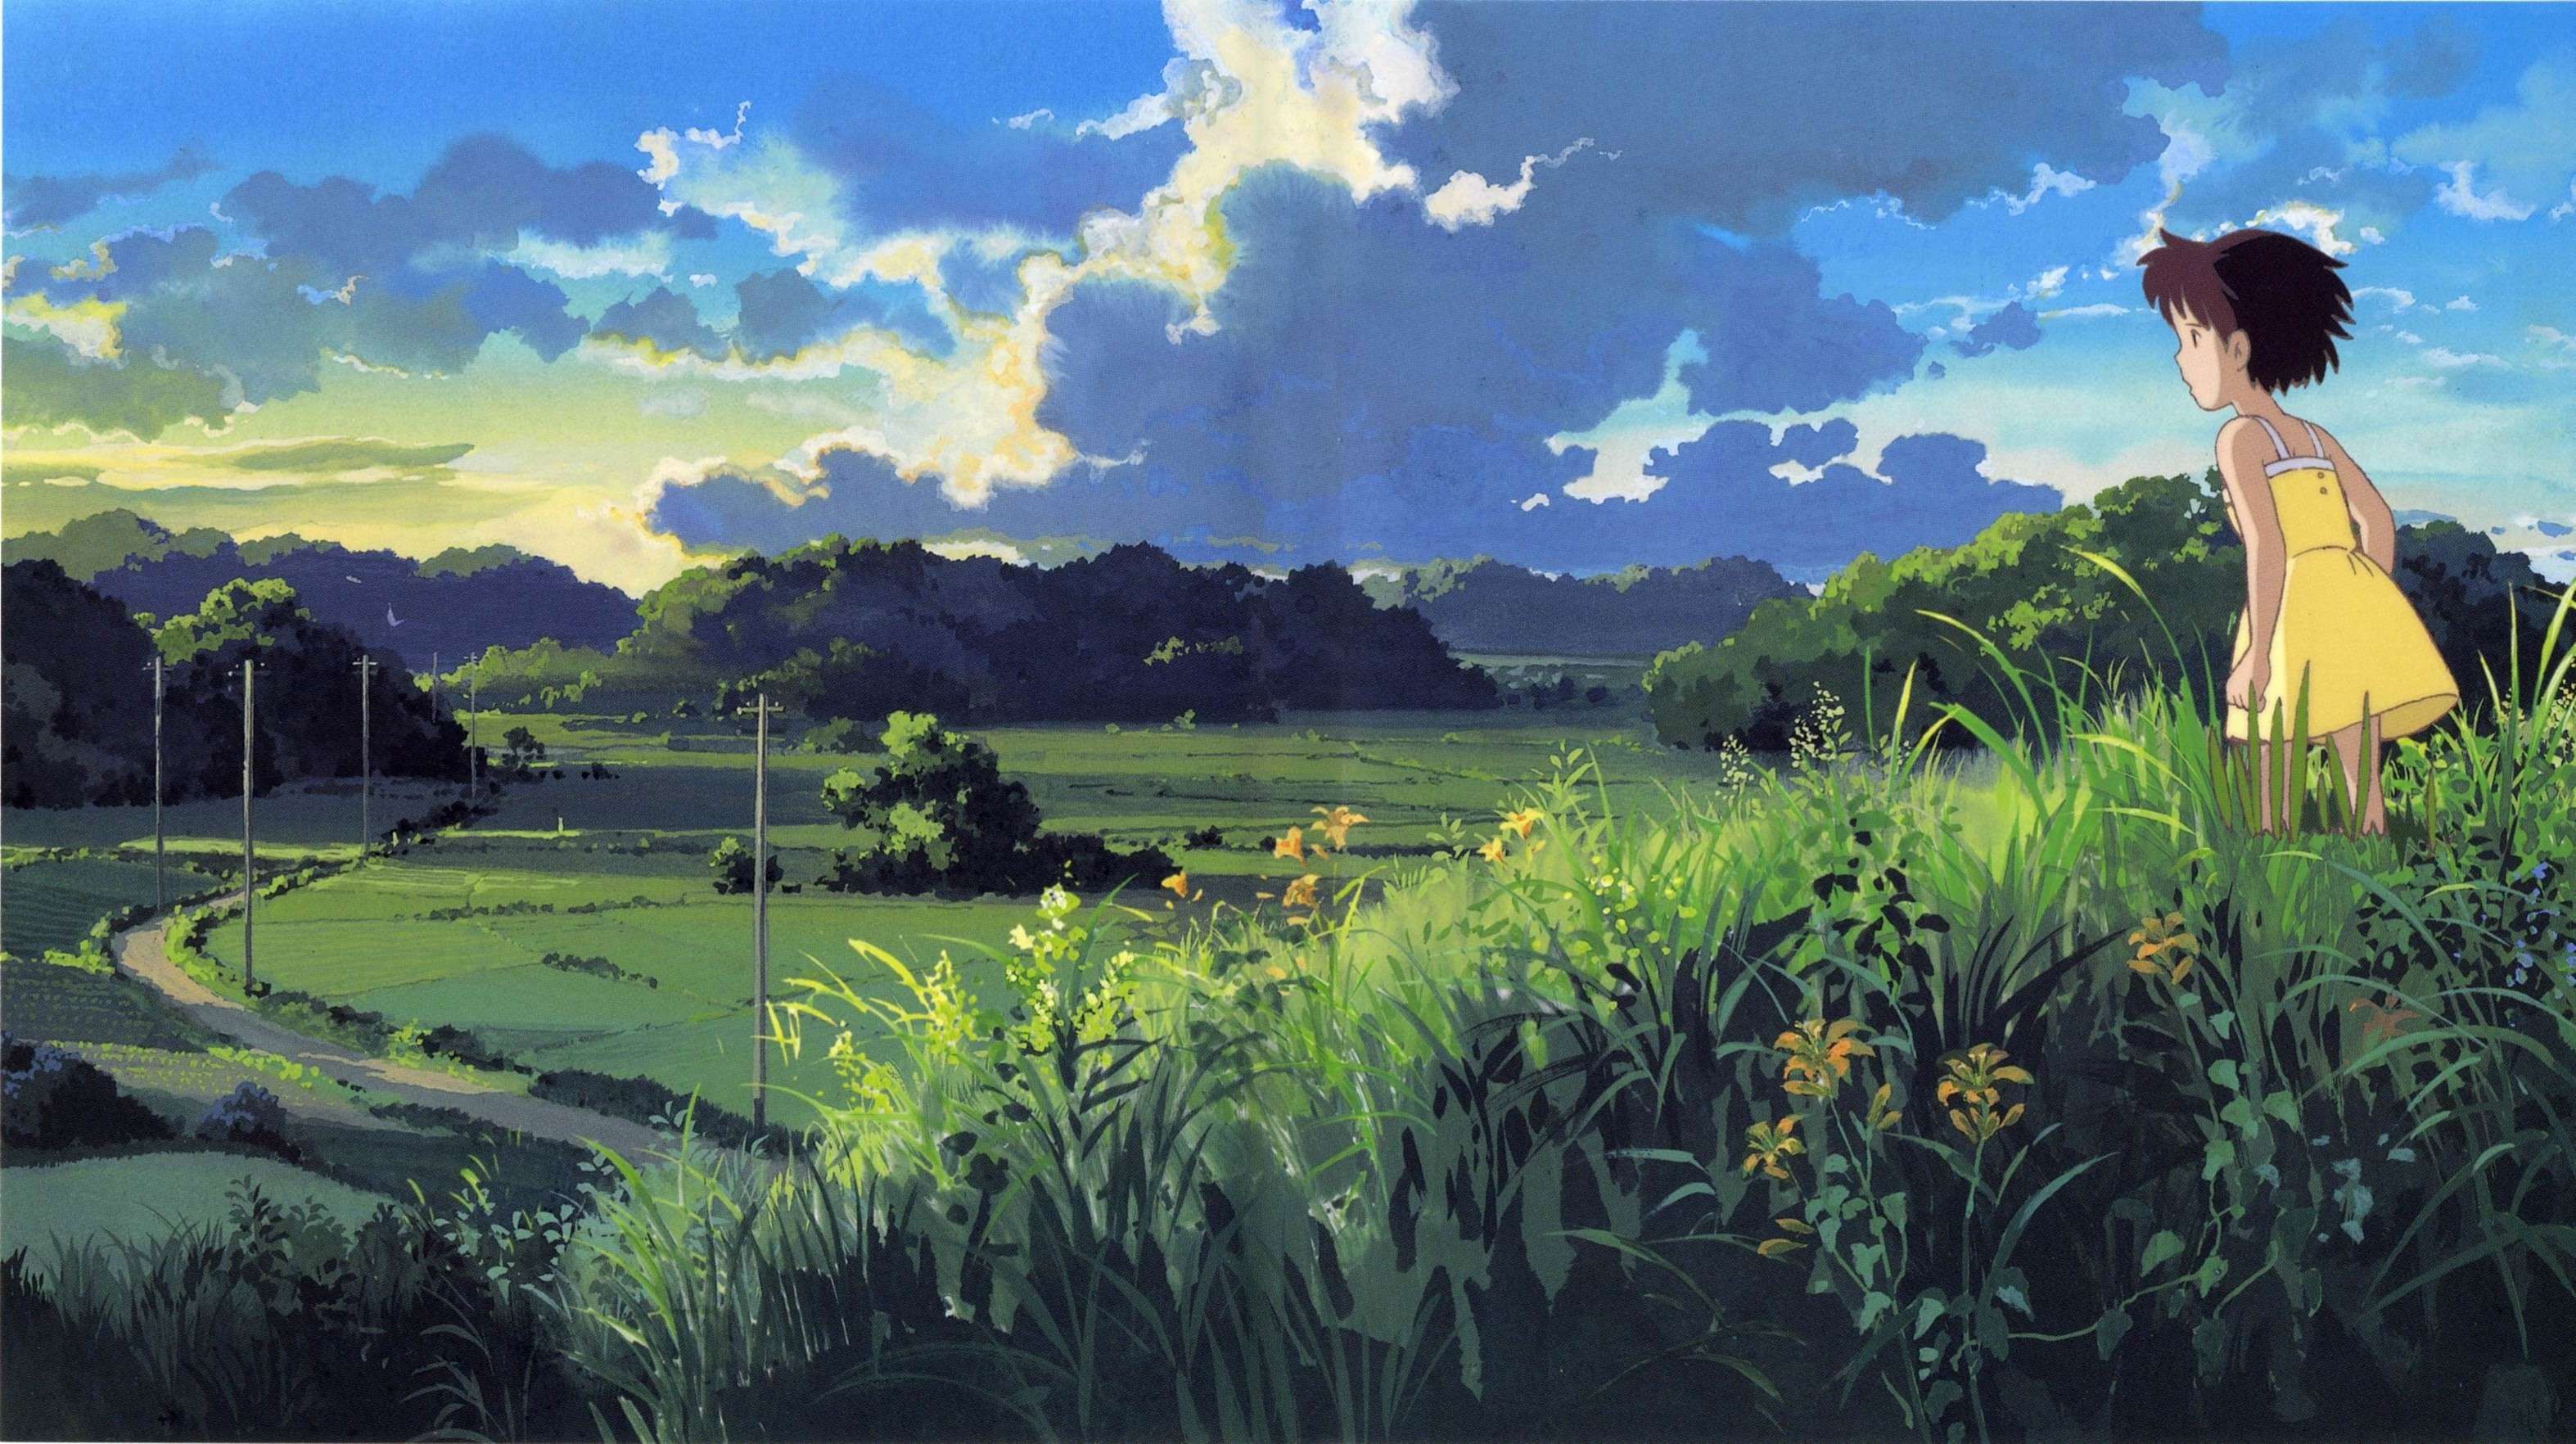 Hình nền desktop Studio Ghibli - Thay đổi màn hình desktop của bạn với những hình nền đẹp của Studio Ghibli. Từ các nhân vật dễ thương cho đến các cảnh quan lãng mạn và đồ sộ, sự đa dạng của các bức tranh này sẽ làm hài lòng mọi người.